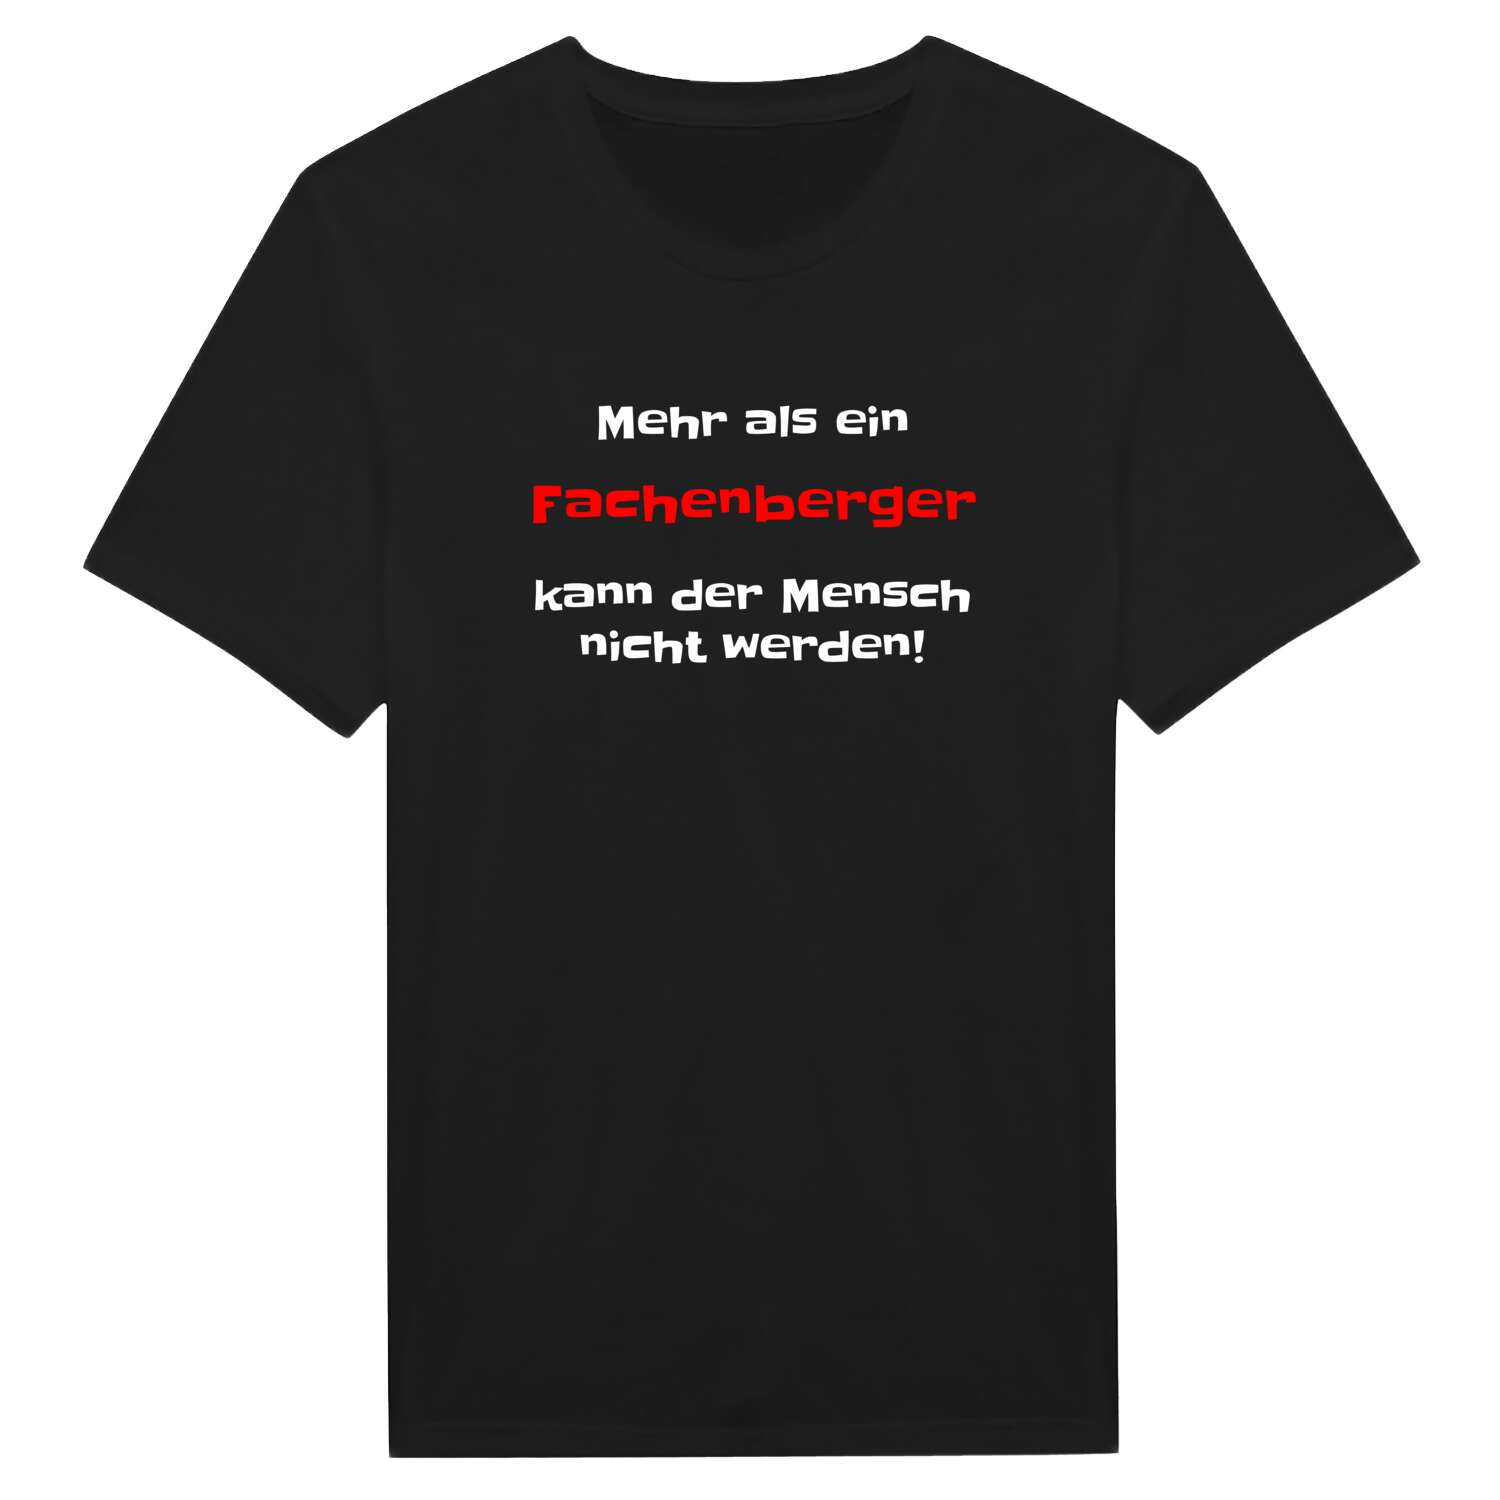 Fachenberg T-Shirt »Mehr als ein«